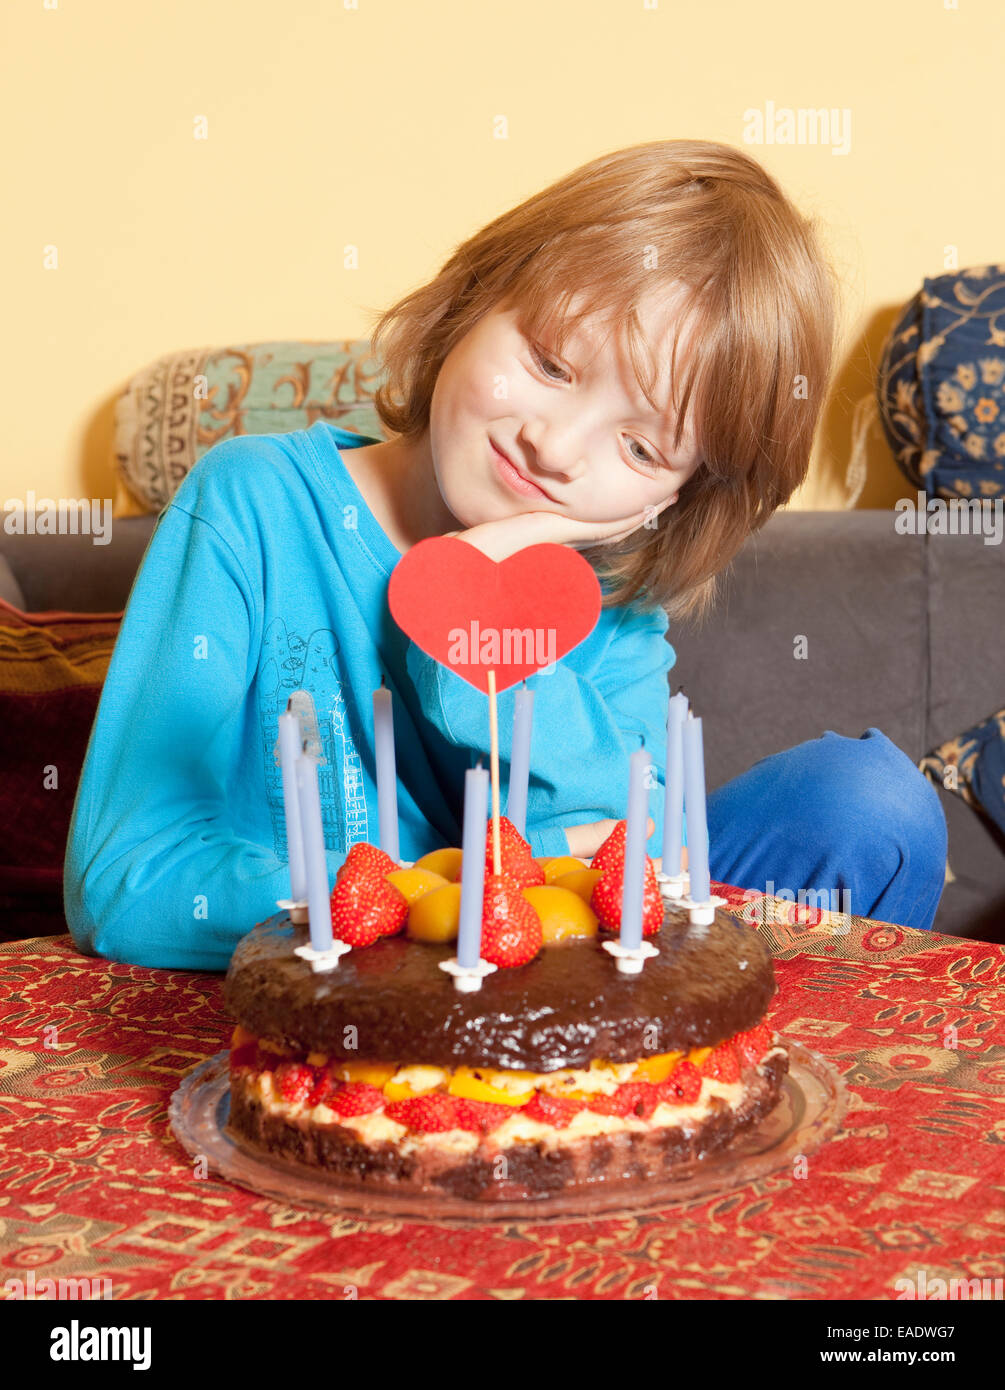 Garçon aux cheveux blonds regardant son gâteau d'anniversaire Banque D'Images